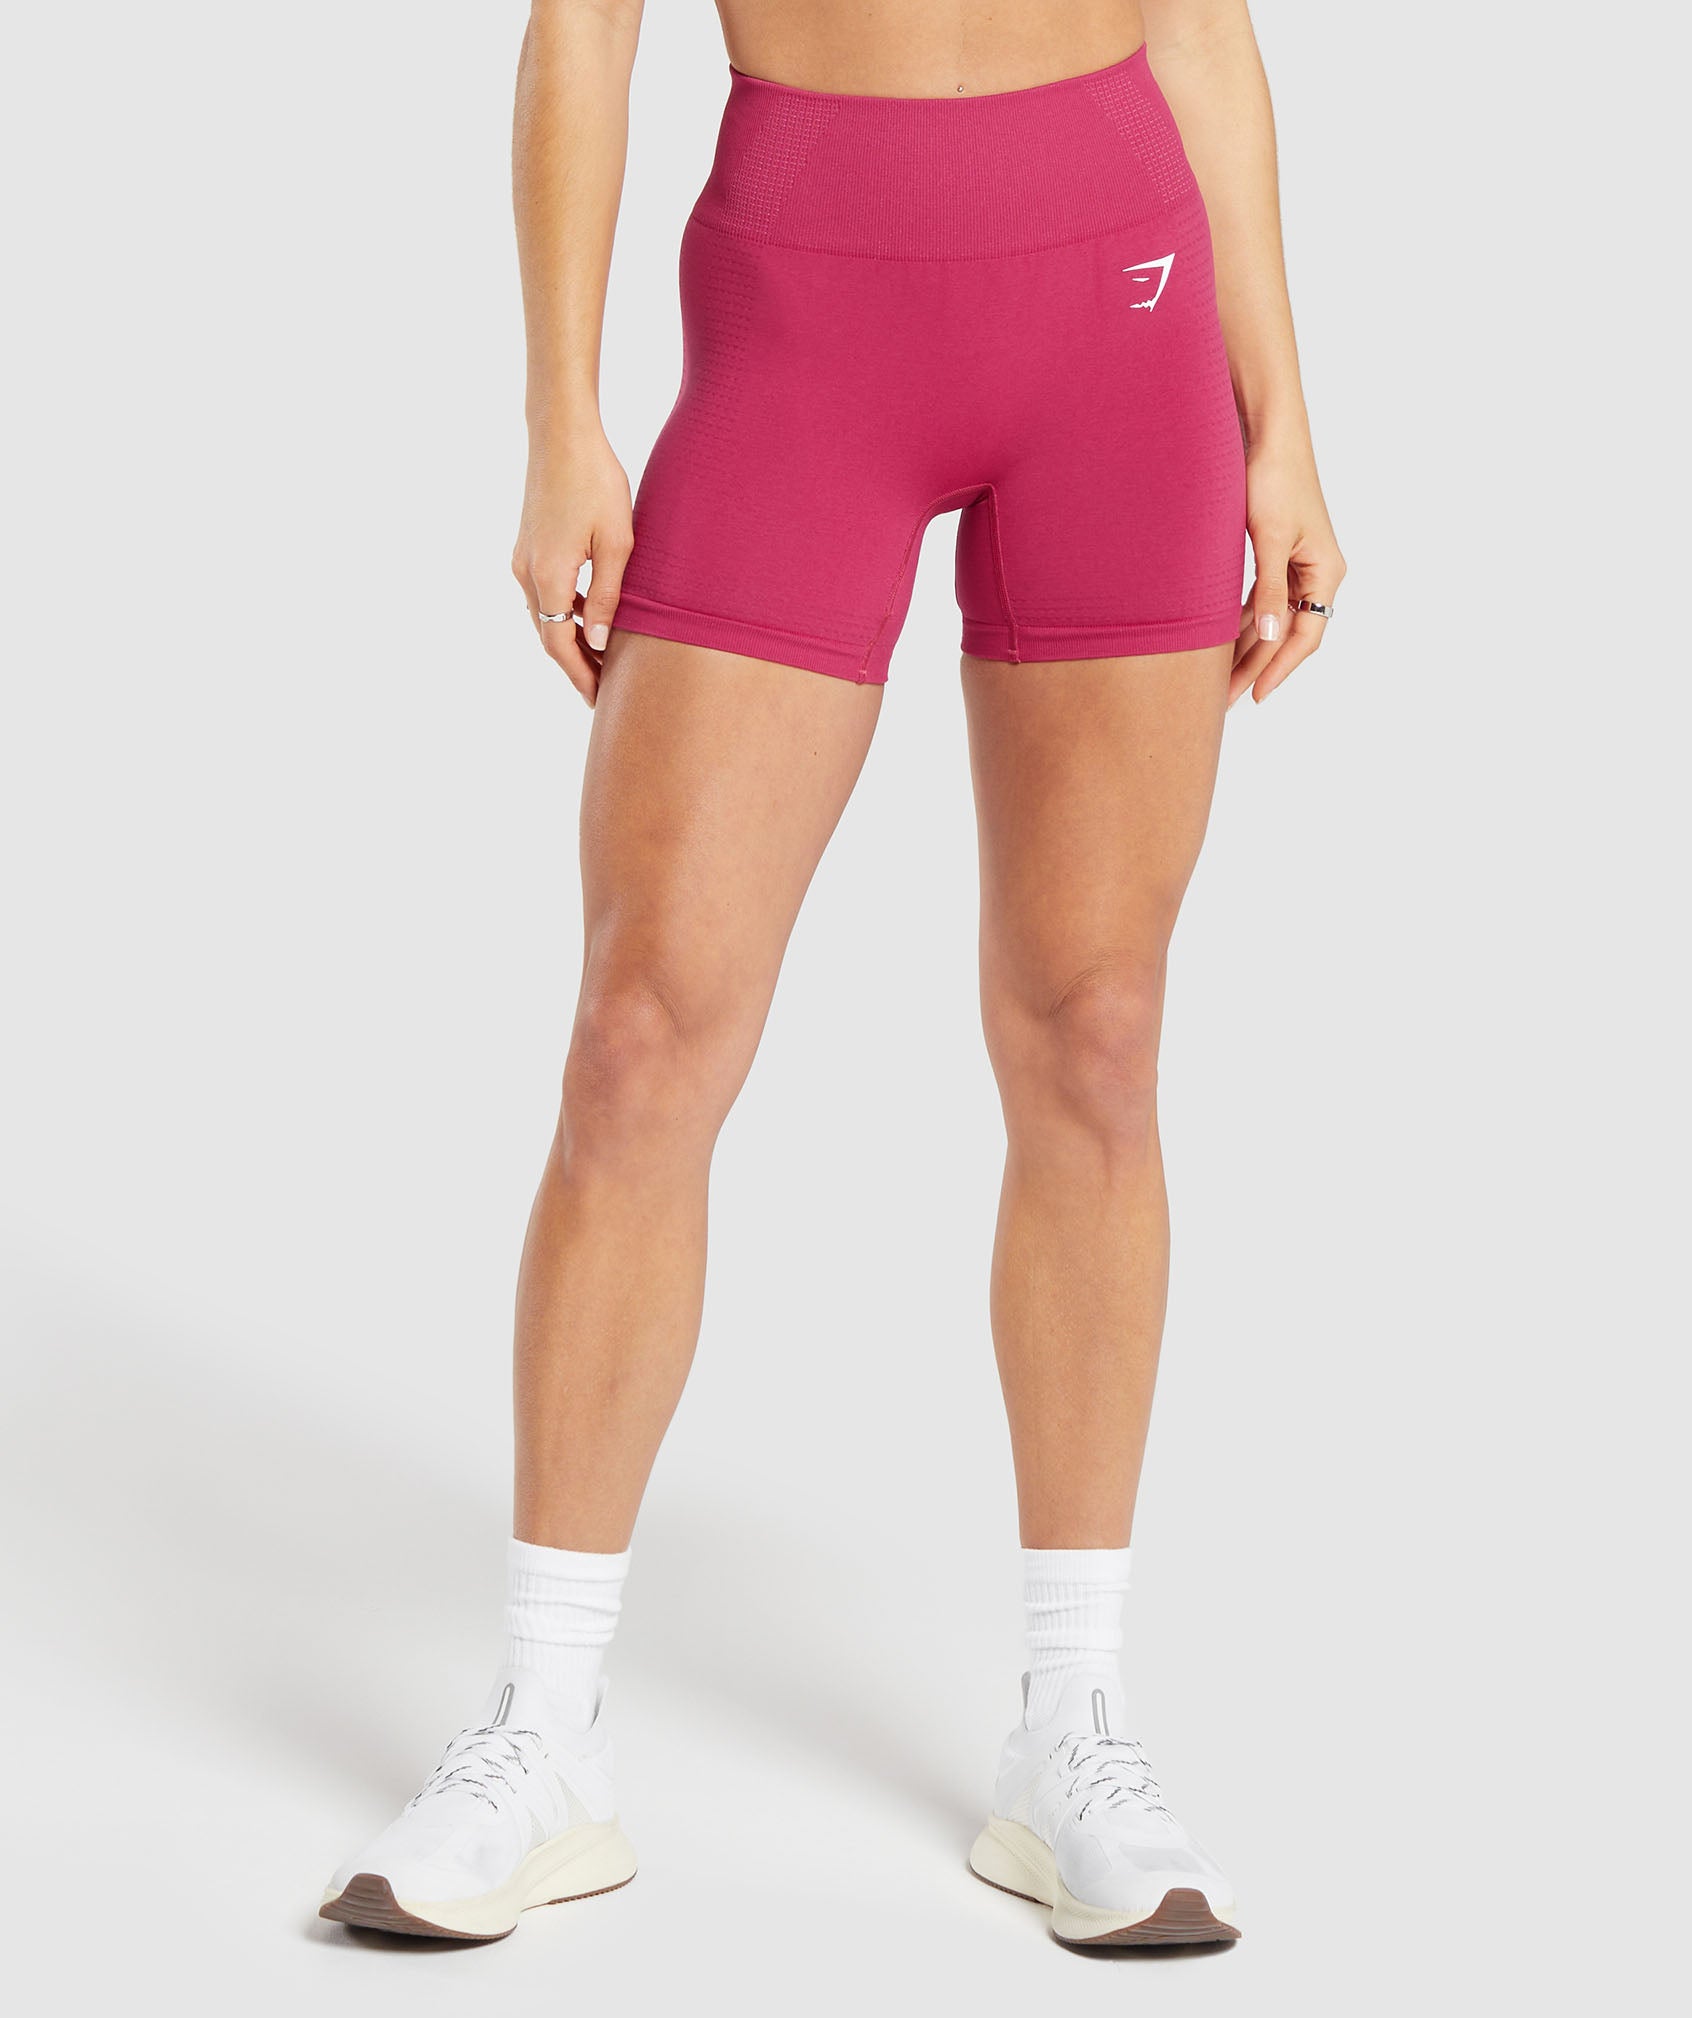 Vital Seamless 2.0 Shorts in Vintage Pink/Marl ist nicht auf Lager